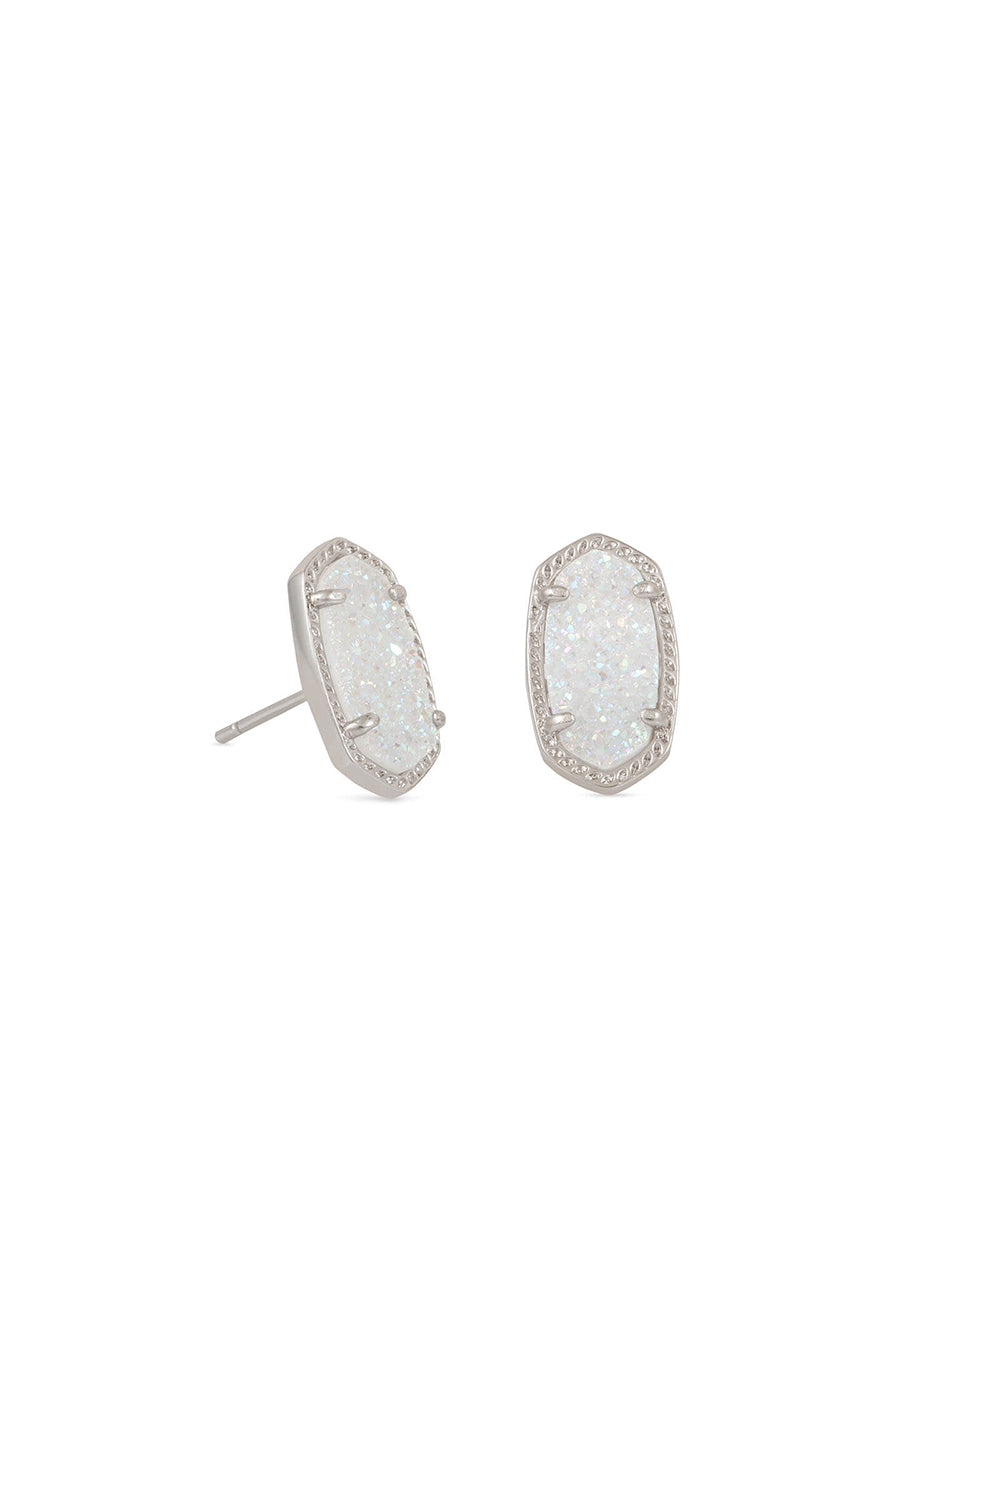 Kendra Scott: Ellie Silver Stud Earrings - Iridescent Drusy | Makk Fashions